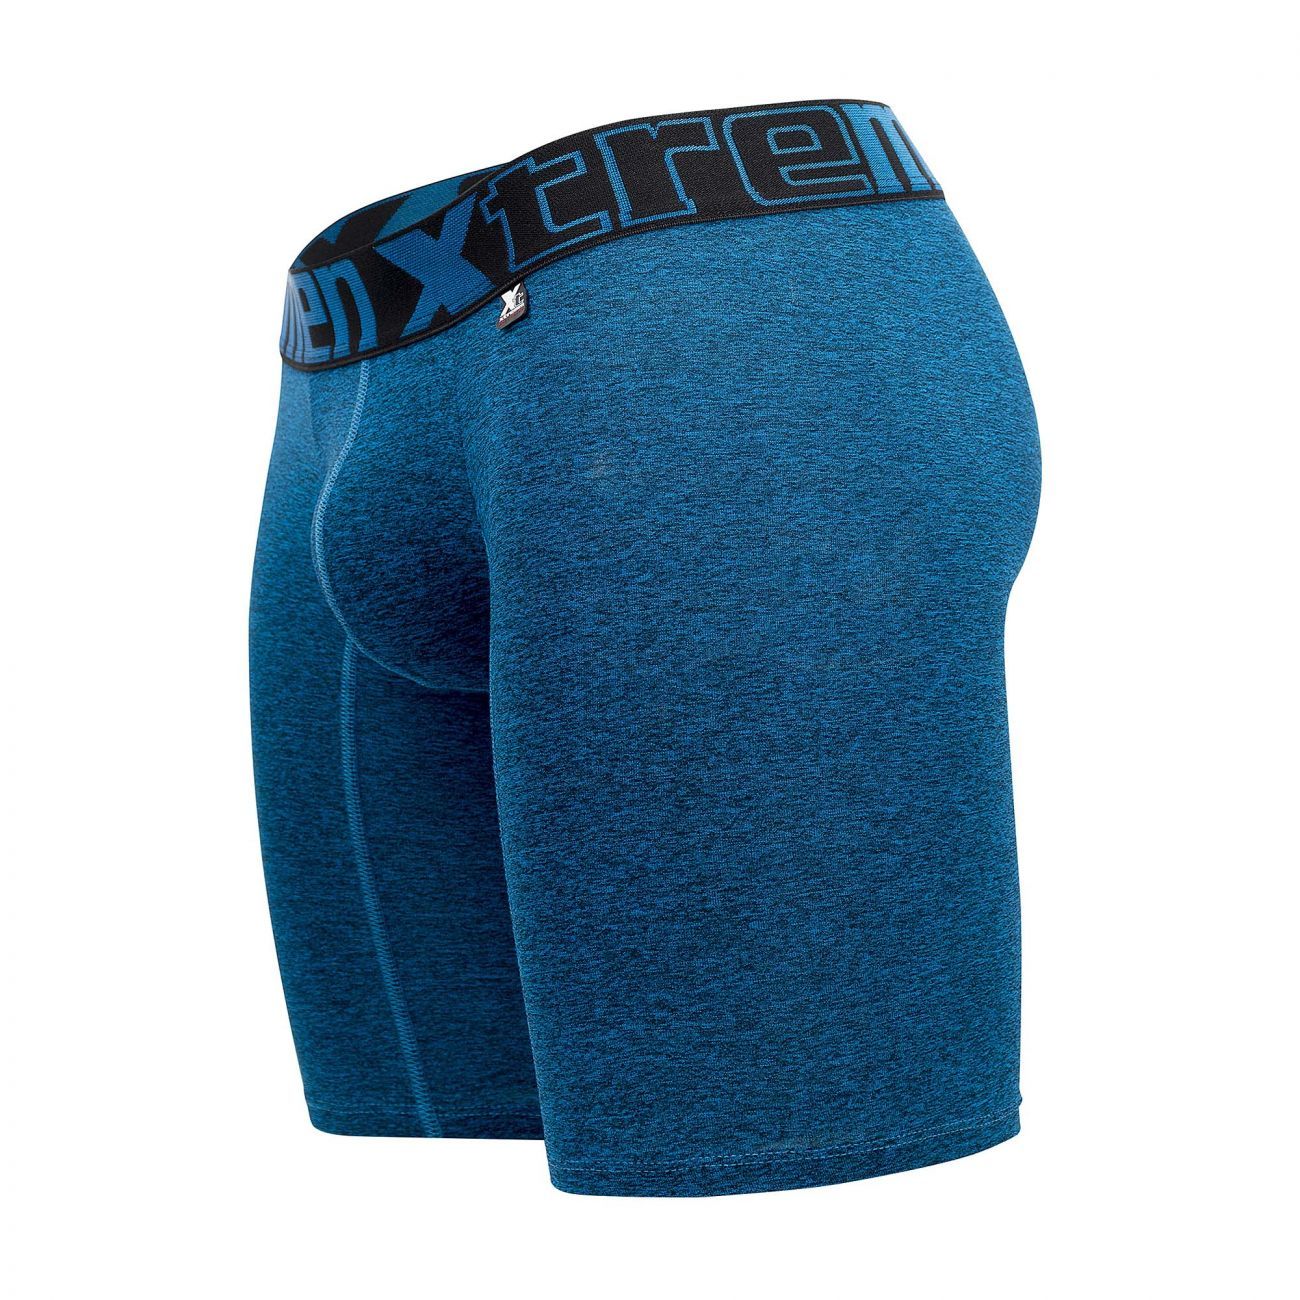 Xtremen 51485 Microfiber Athletic Boxer Briefs Blue - Size XL